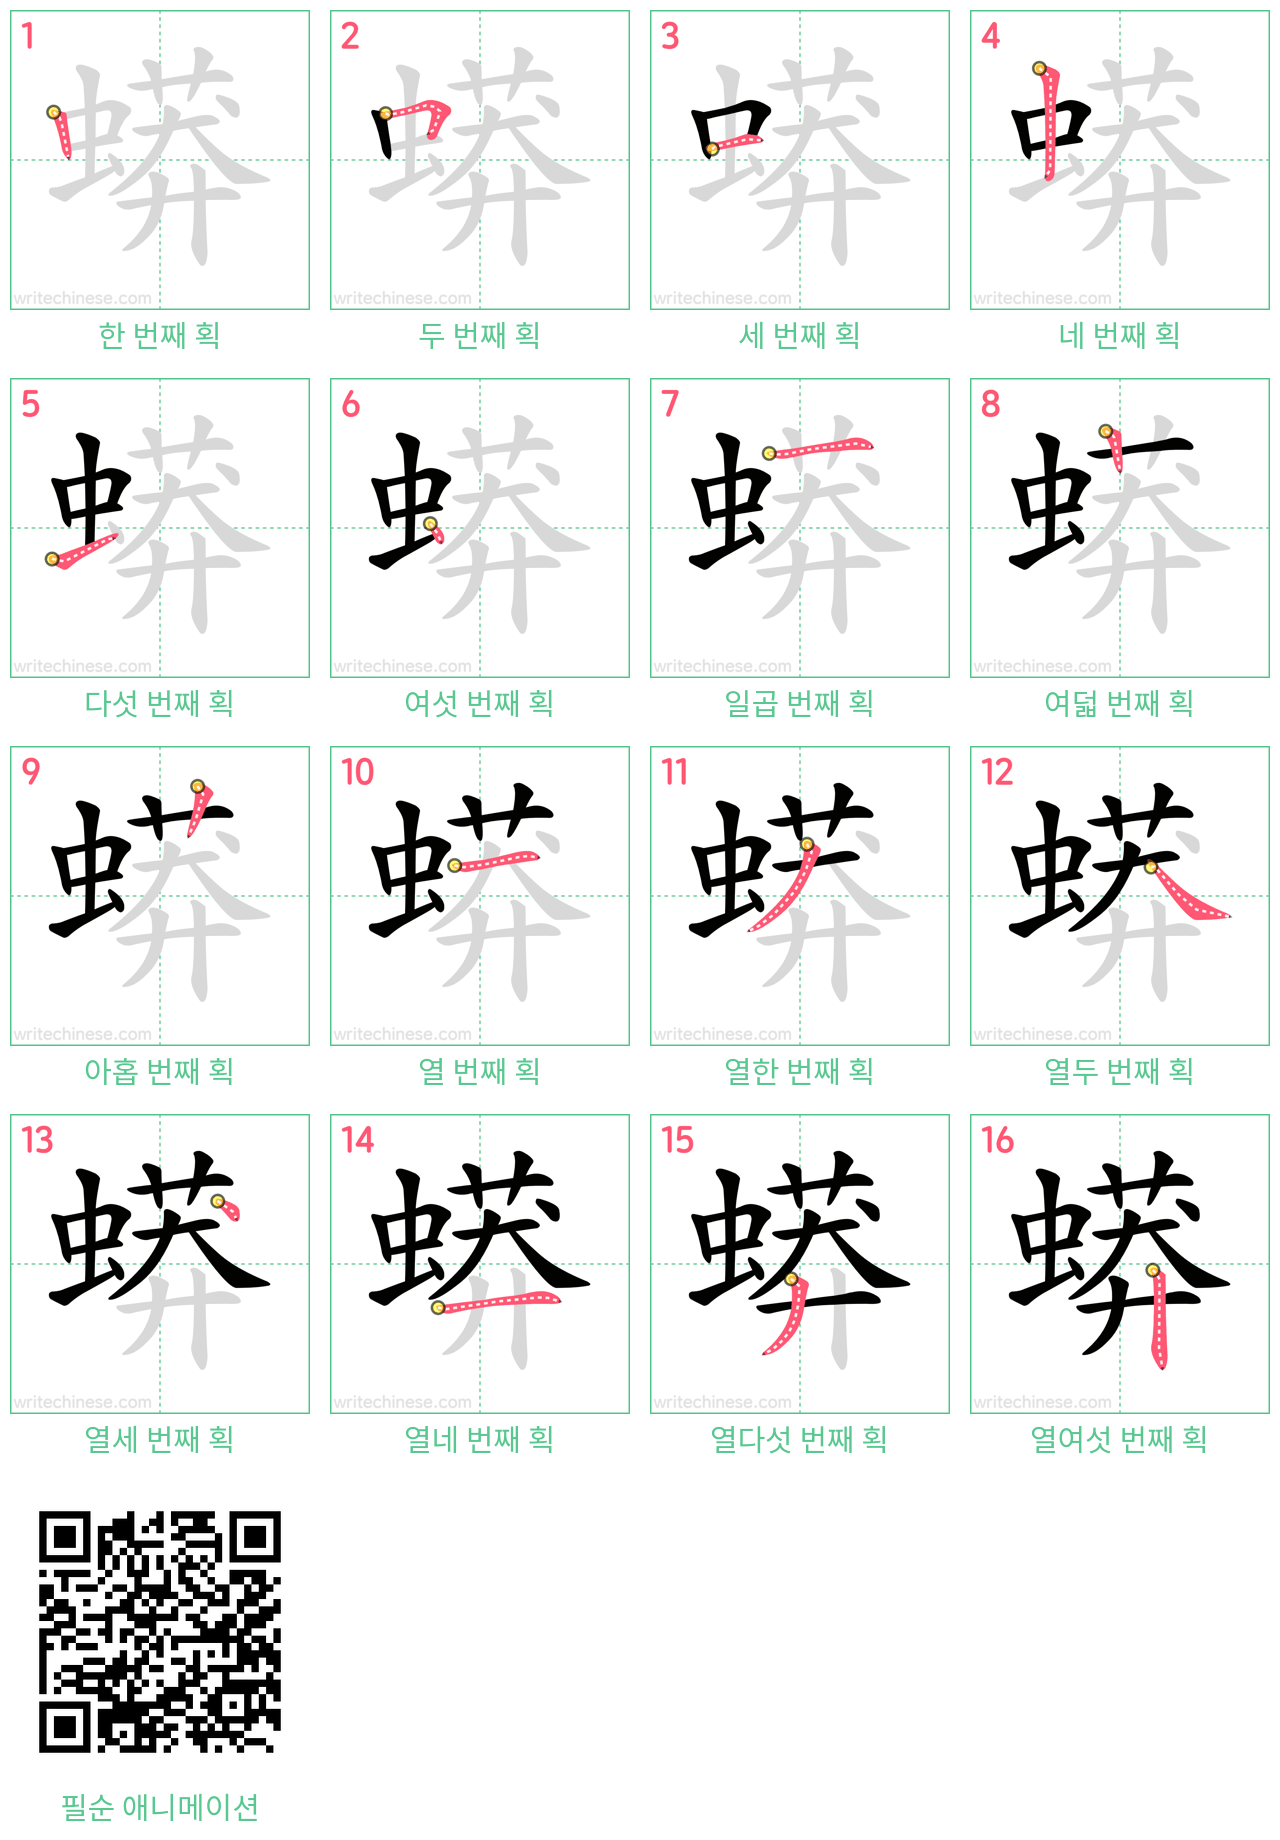 蟒 step-by-step stroke order diagrams